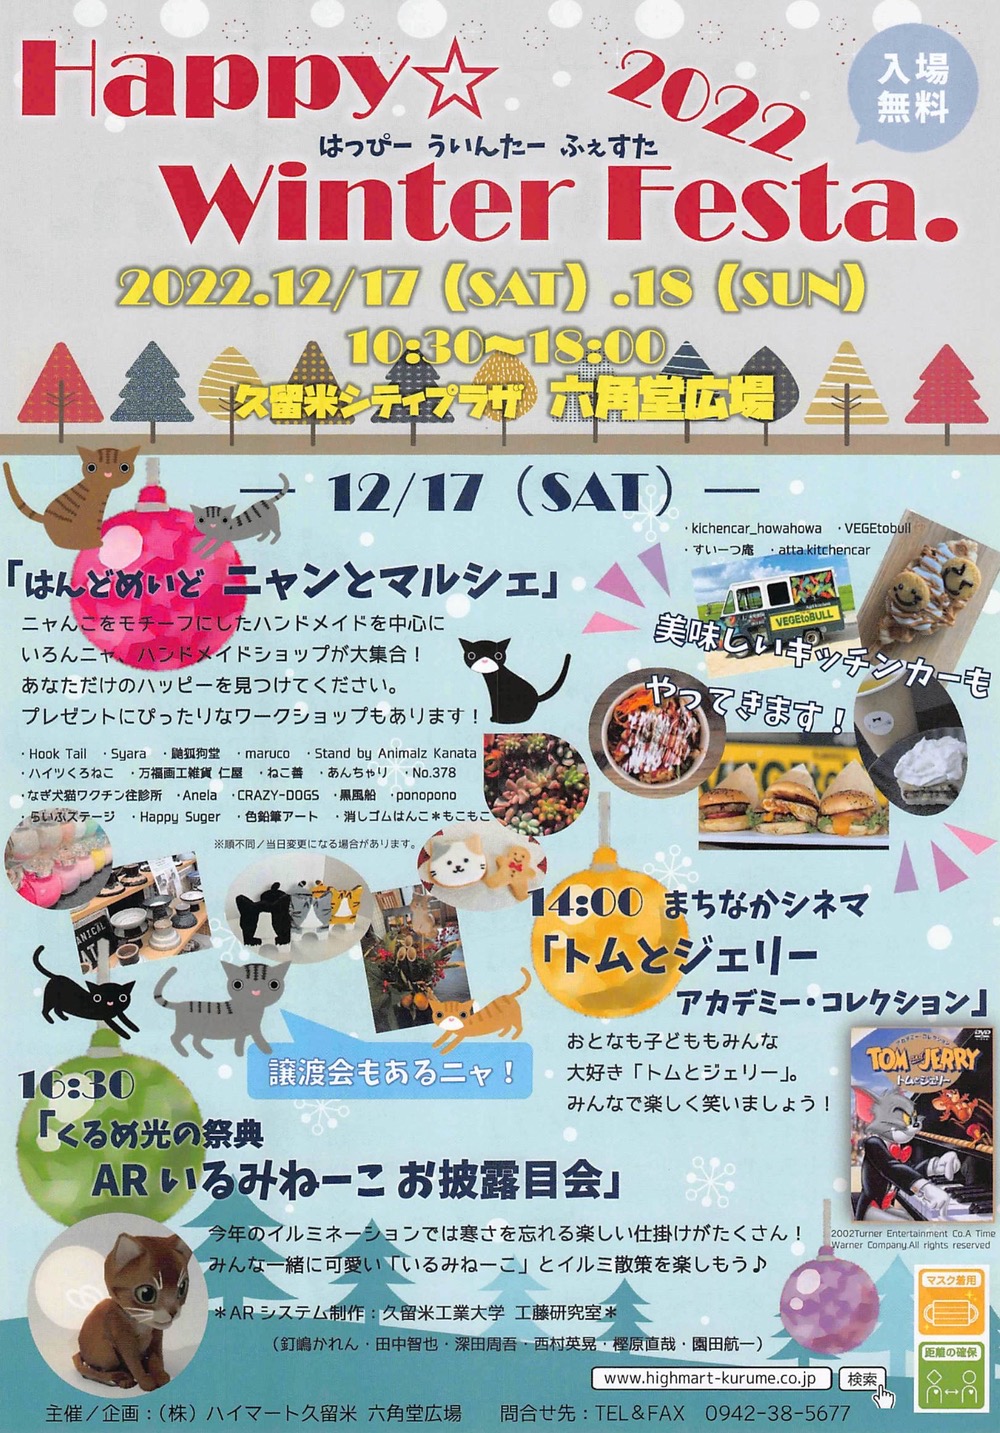 Happy Winter Festa2022「ニャンとマルシェ」など久留米市六角堂広場で開催